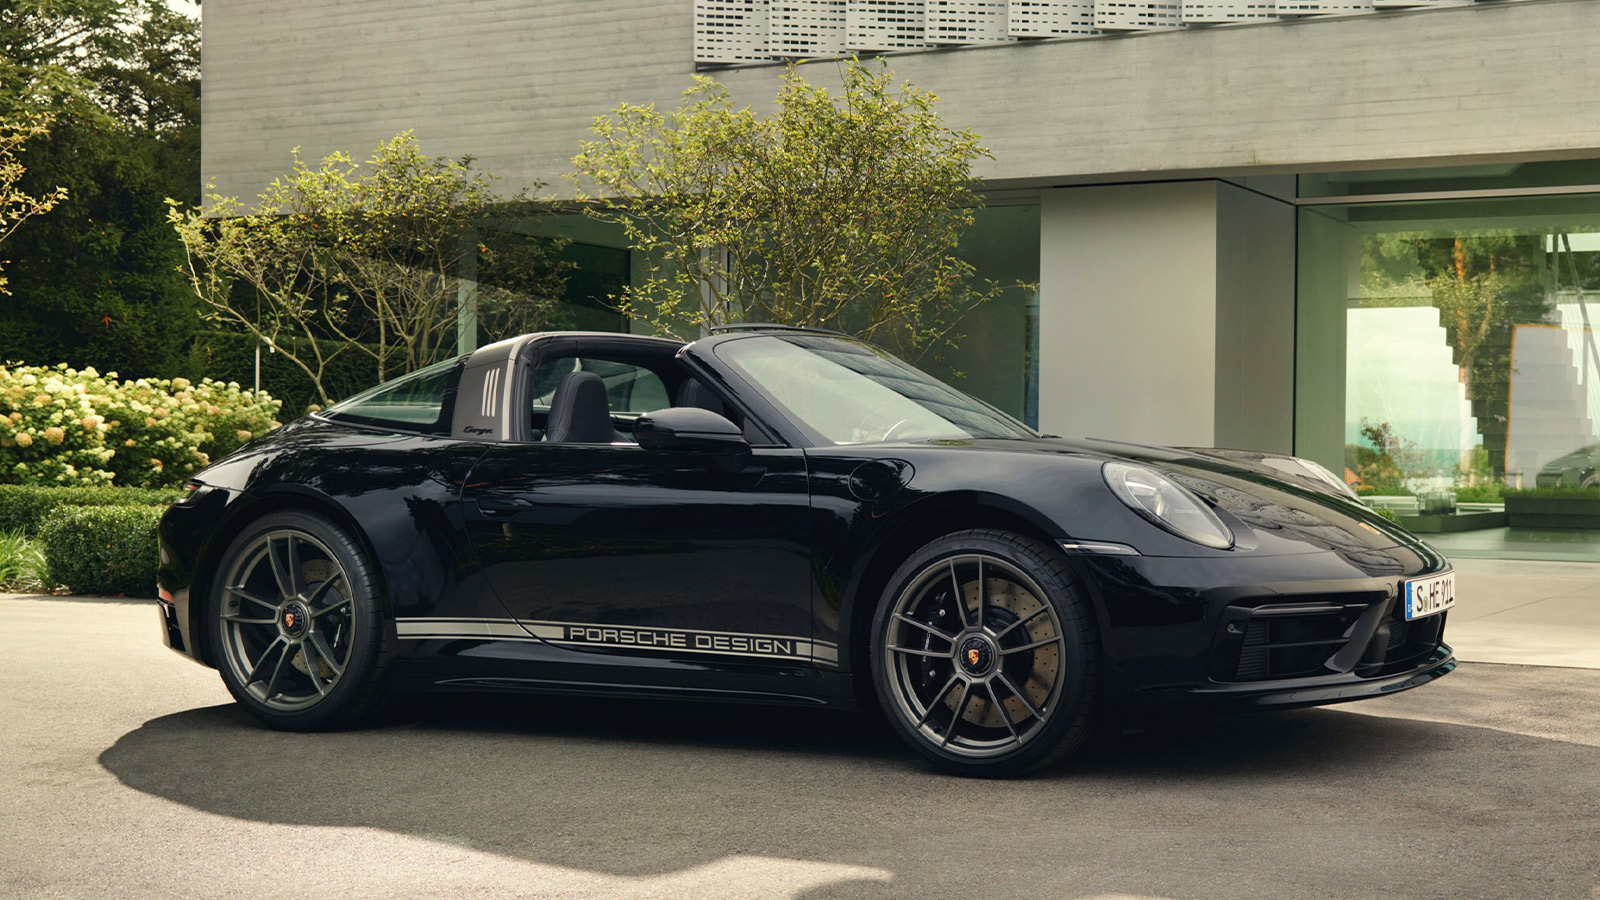 911 Porsche Design 50th Anniversary Edition